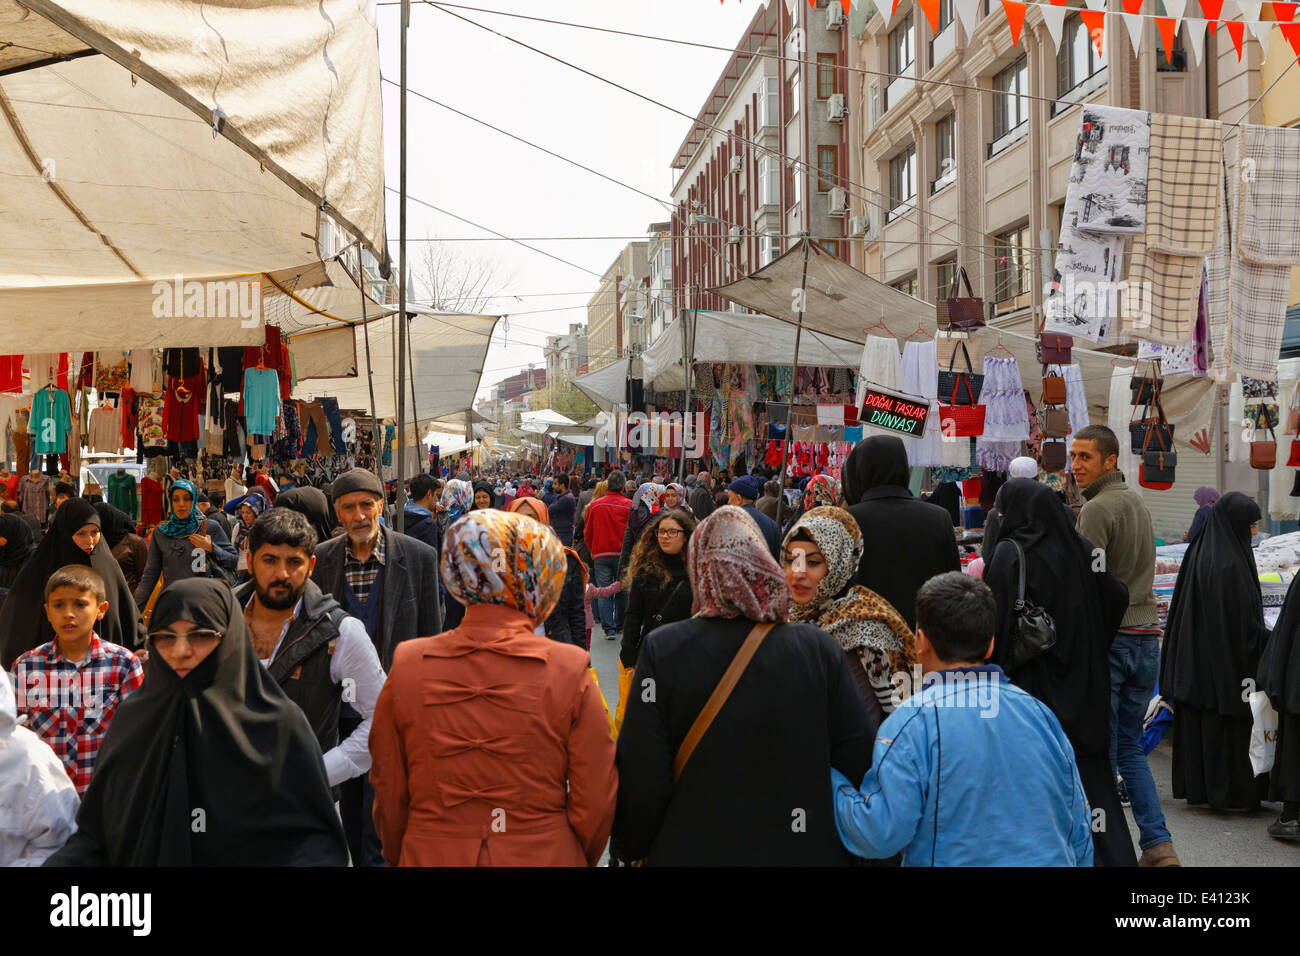 Turchia, Istanbul, Fatih, mercato settimanale Foto Stock